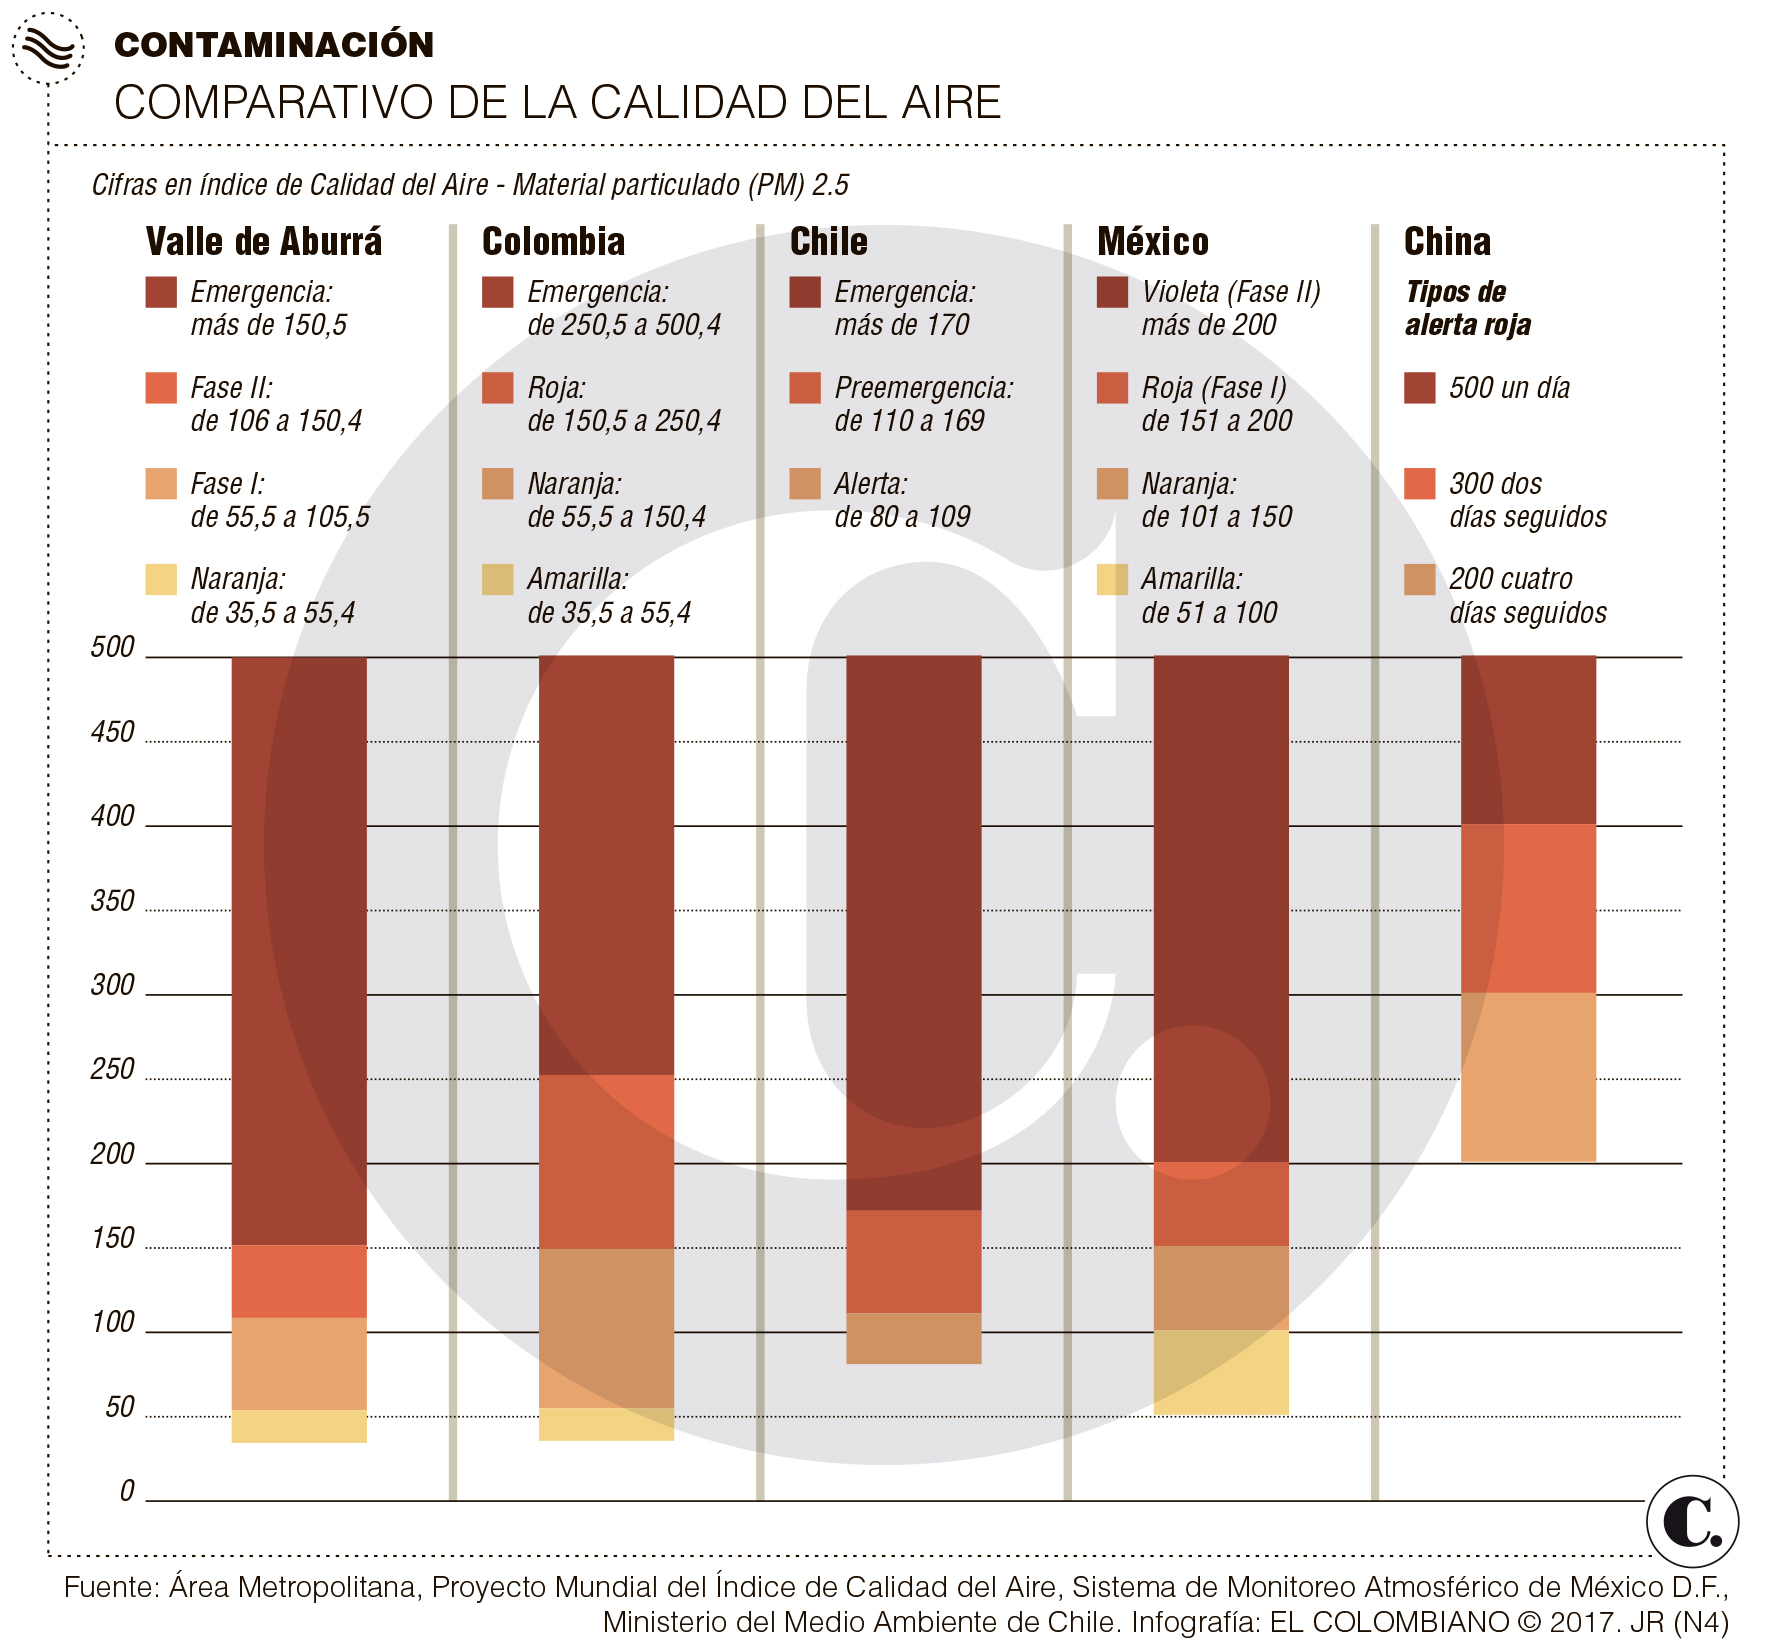 Medellín mide su aire con más rigor que otras ciudades